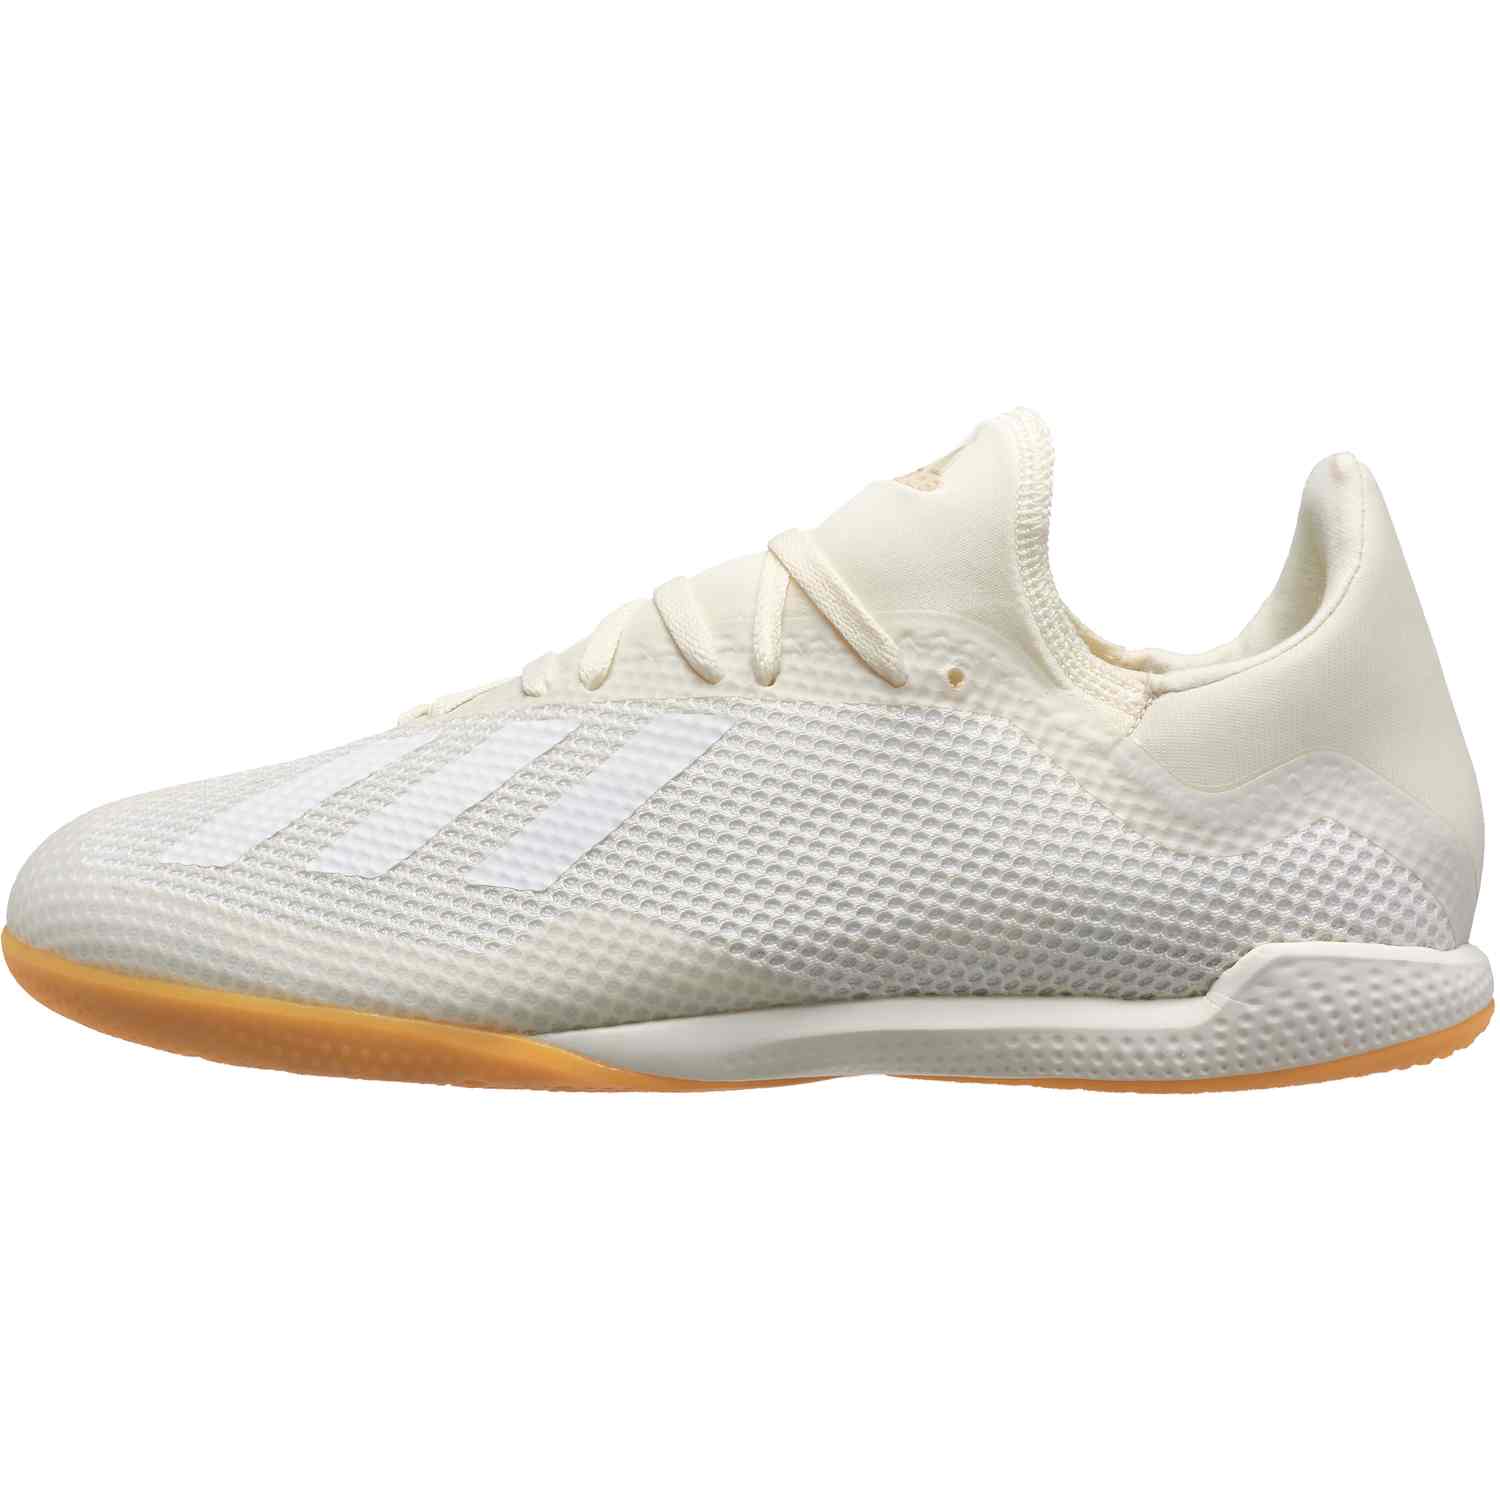 adidas men's x tango 18.3 indoor soccer shoes